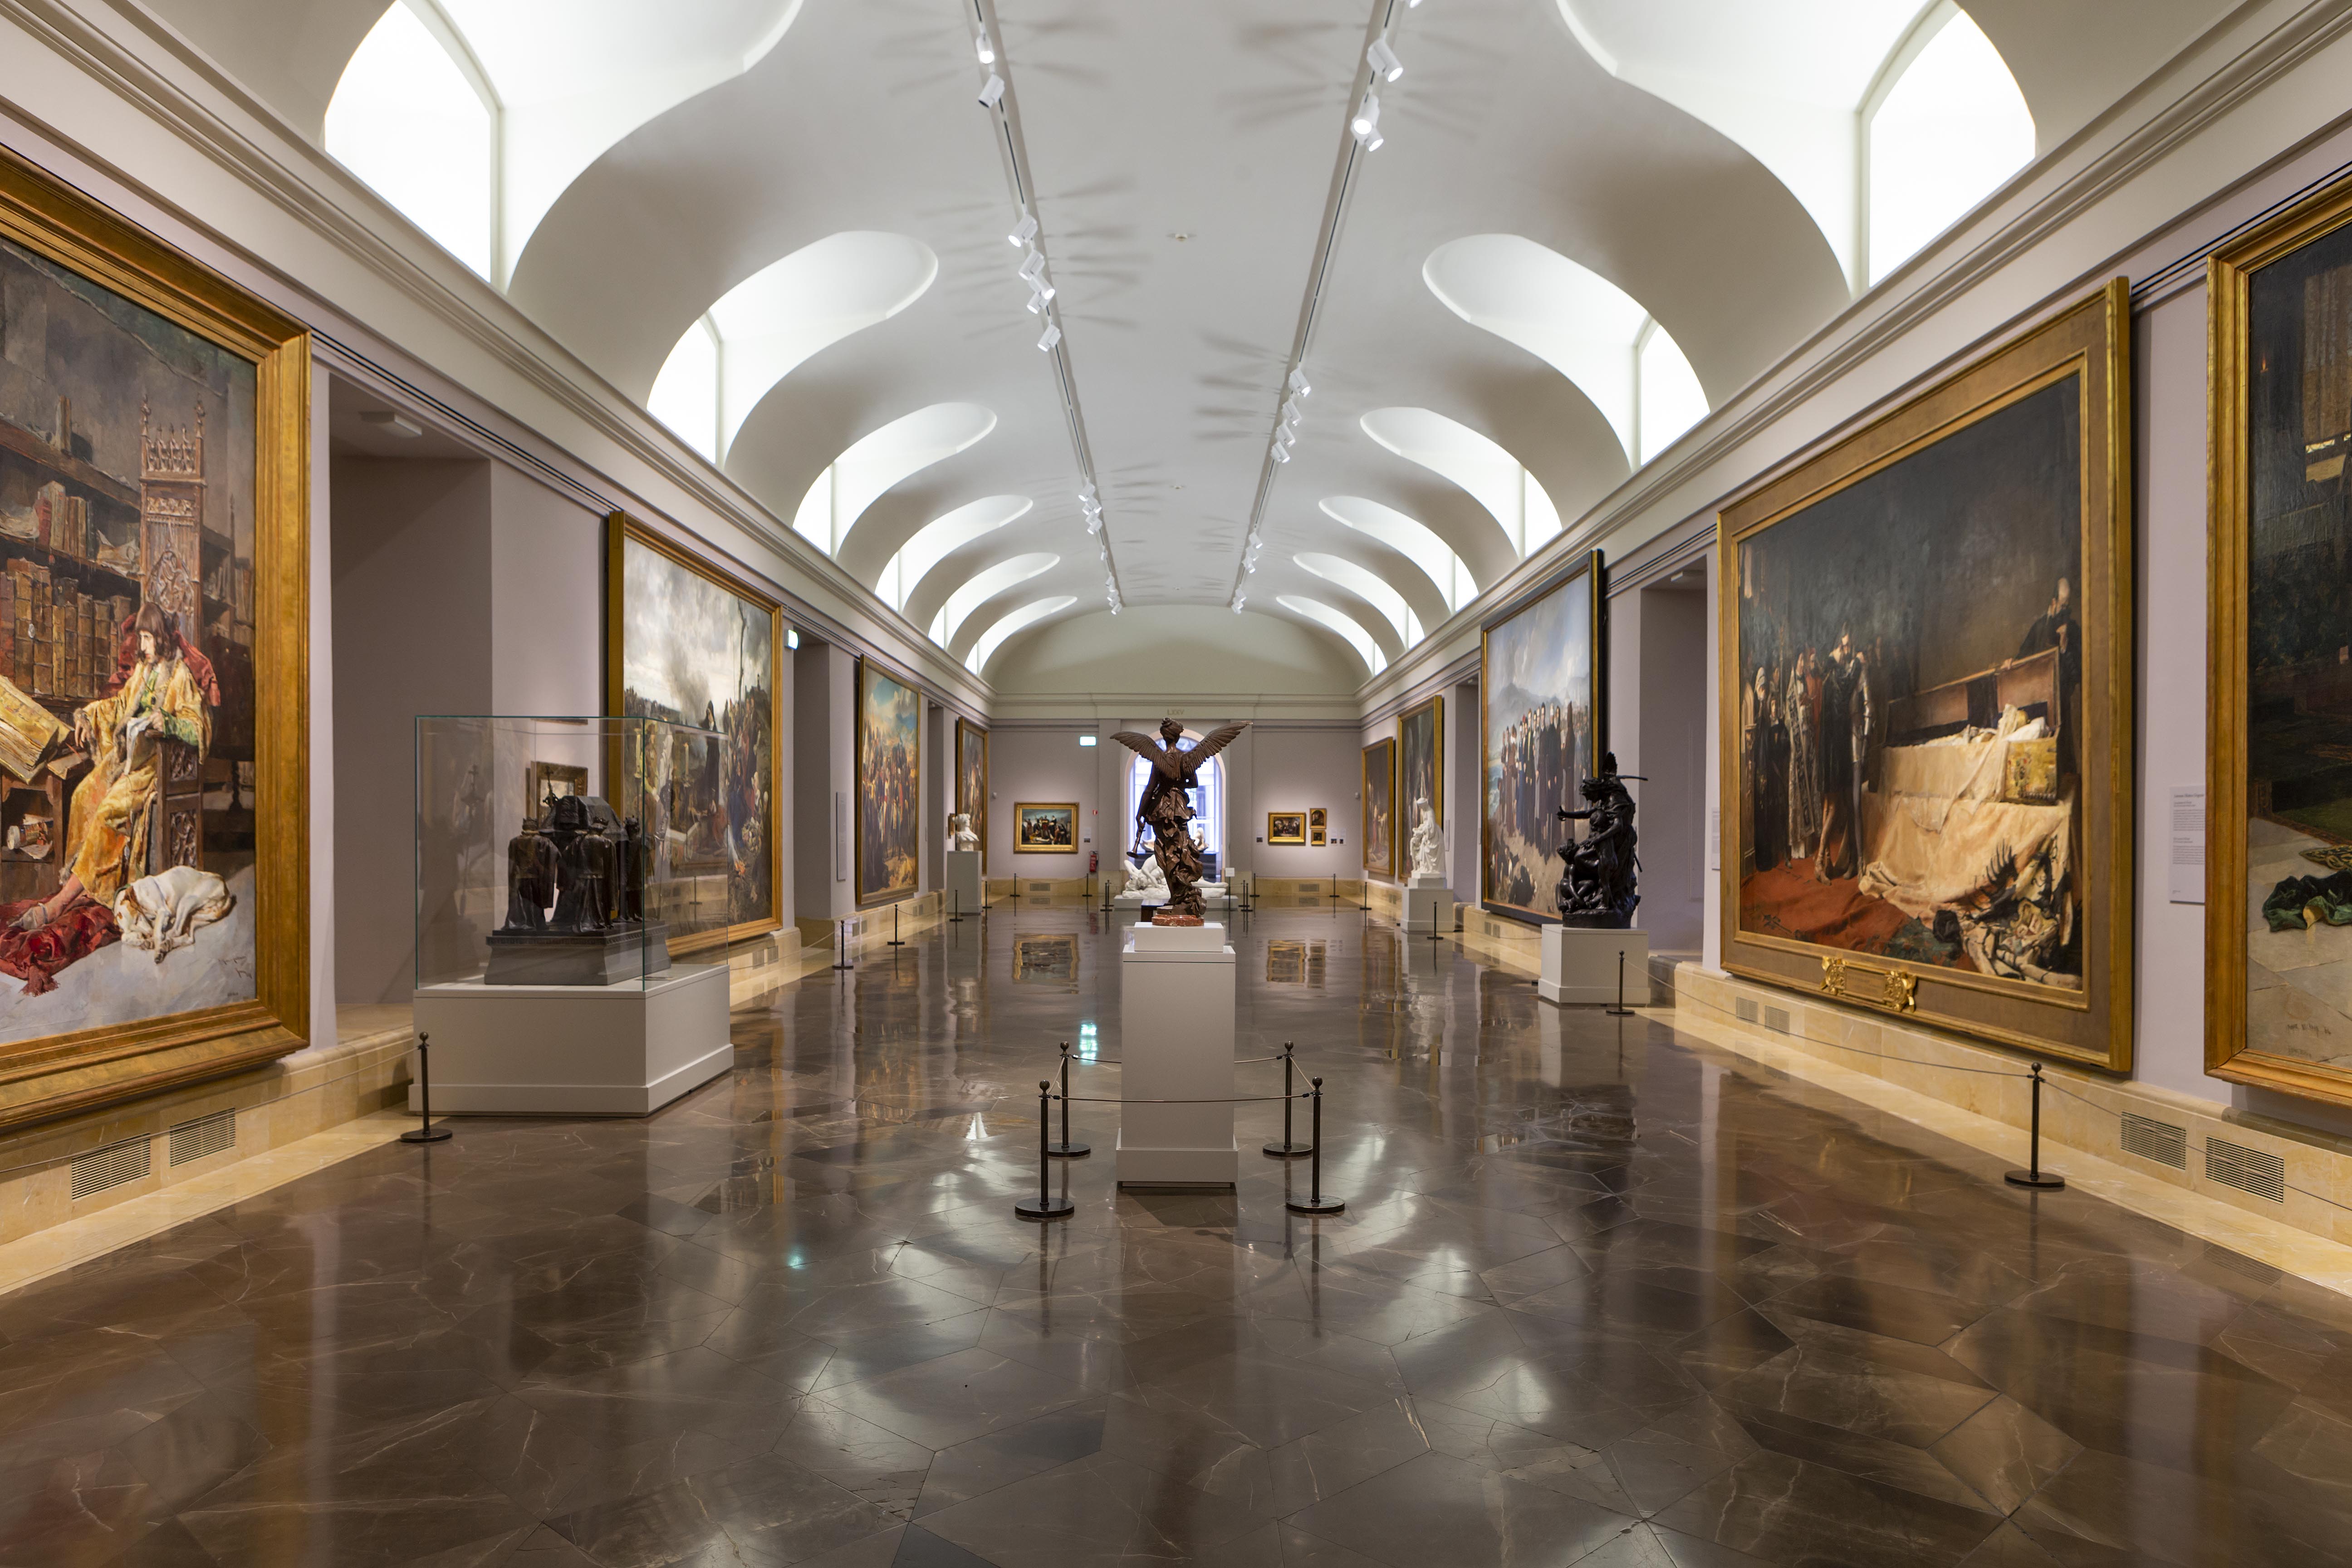 Sala 75 del Museo Nacional del Prado DESPUÉS de la reordenación de la colección del siglo XIX presentada hoy. Pintura de historia. ©Museo Nacional del Prado